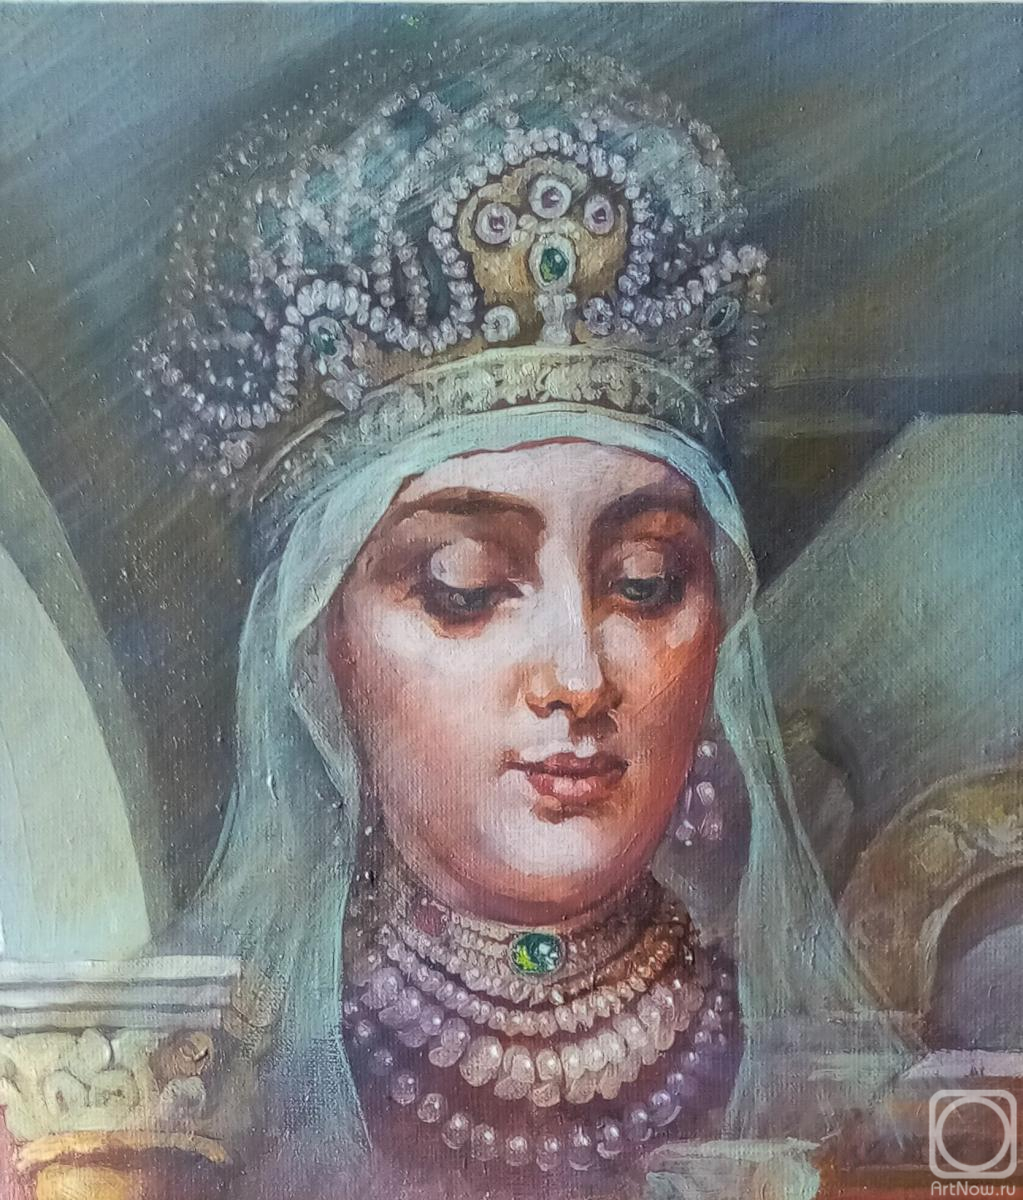 Dobrovolskaya Gayane. Zvenigorod, Tsarina's Chambers, fragment